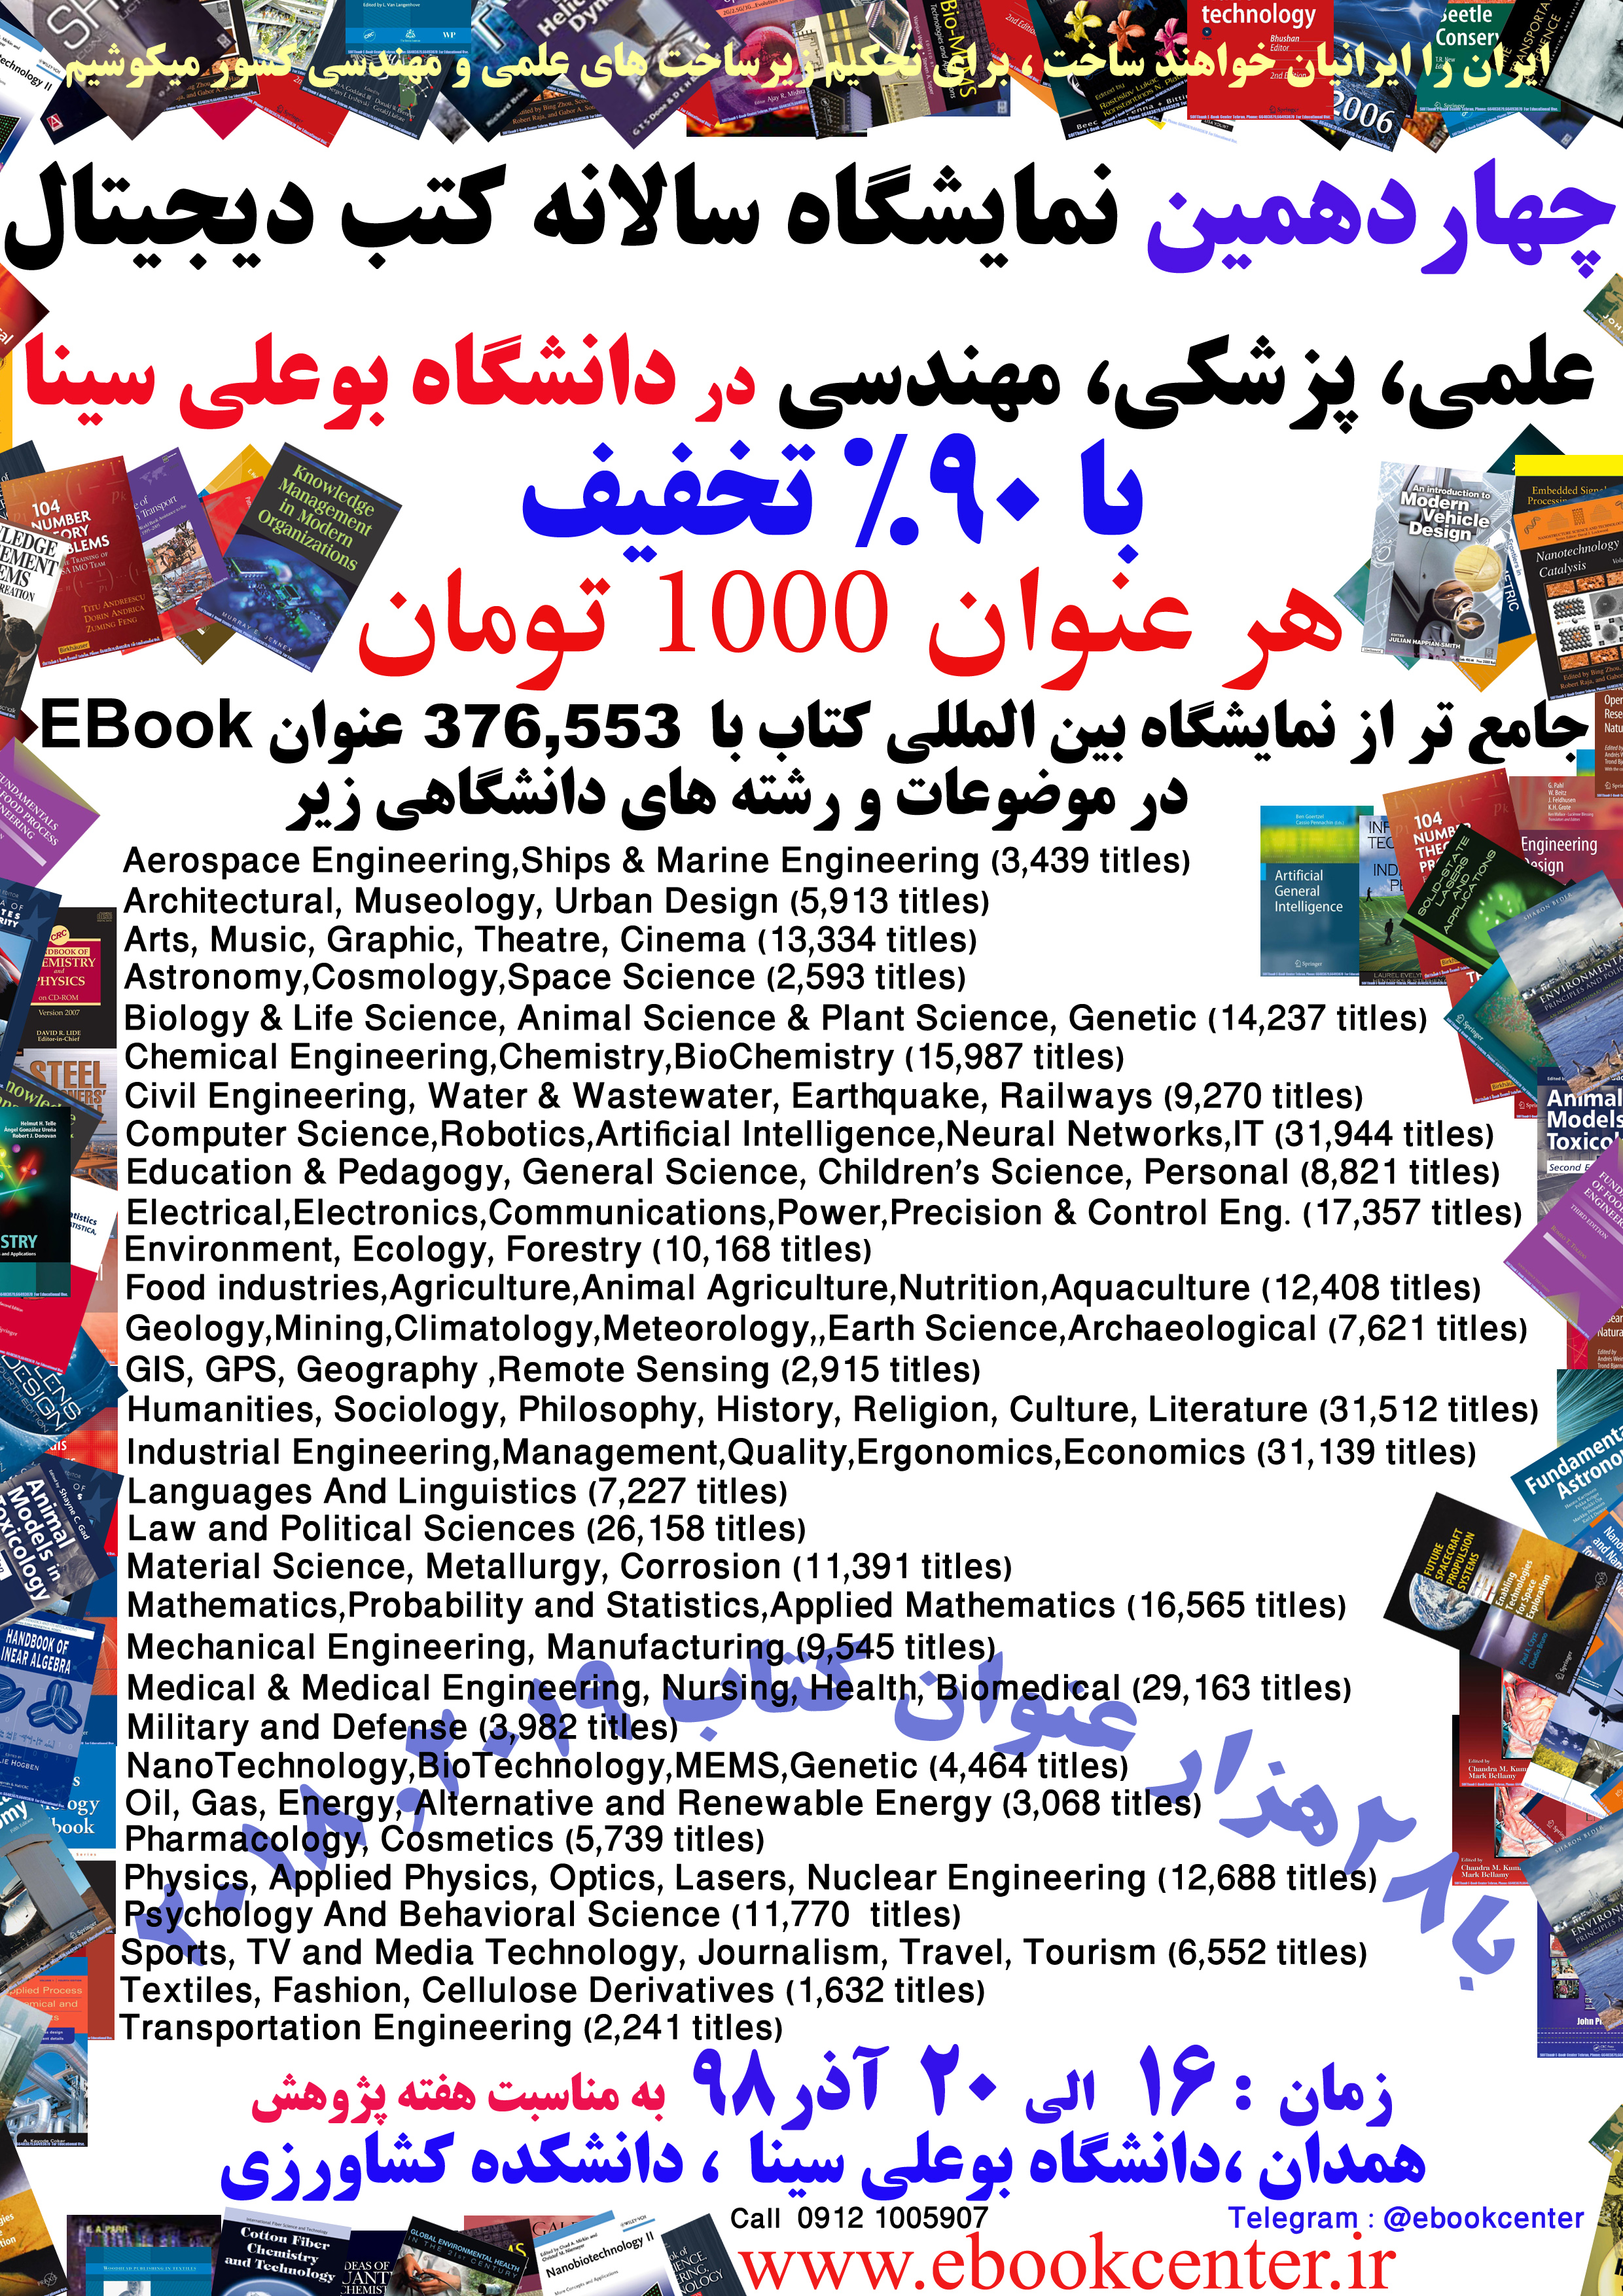 نمایشگاه کتاب فارسی و الکترونیکی در دانشکده کشاورزی به مناسبت هفته پیوهش